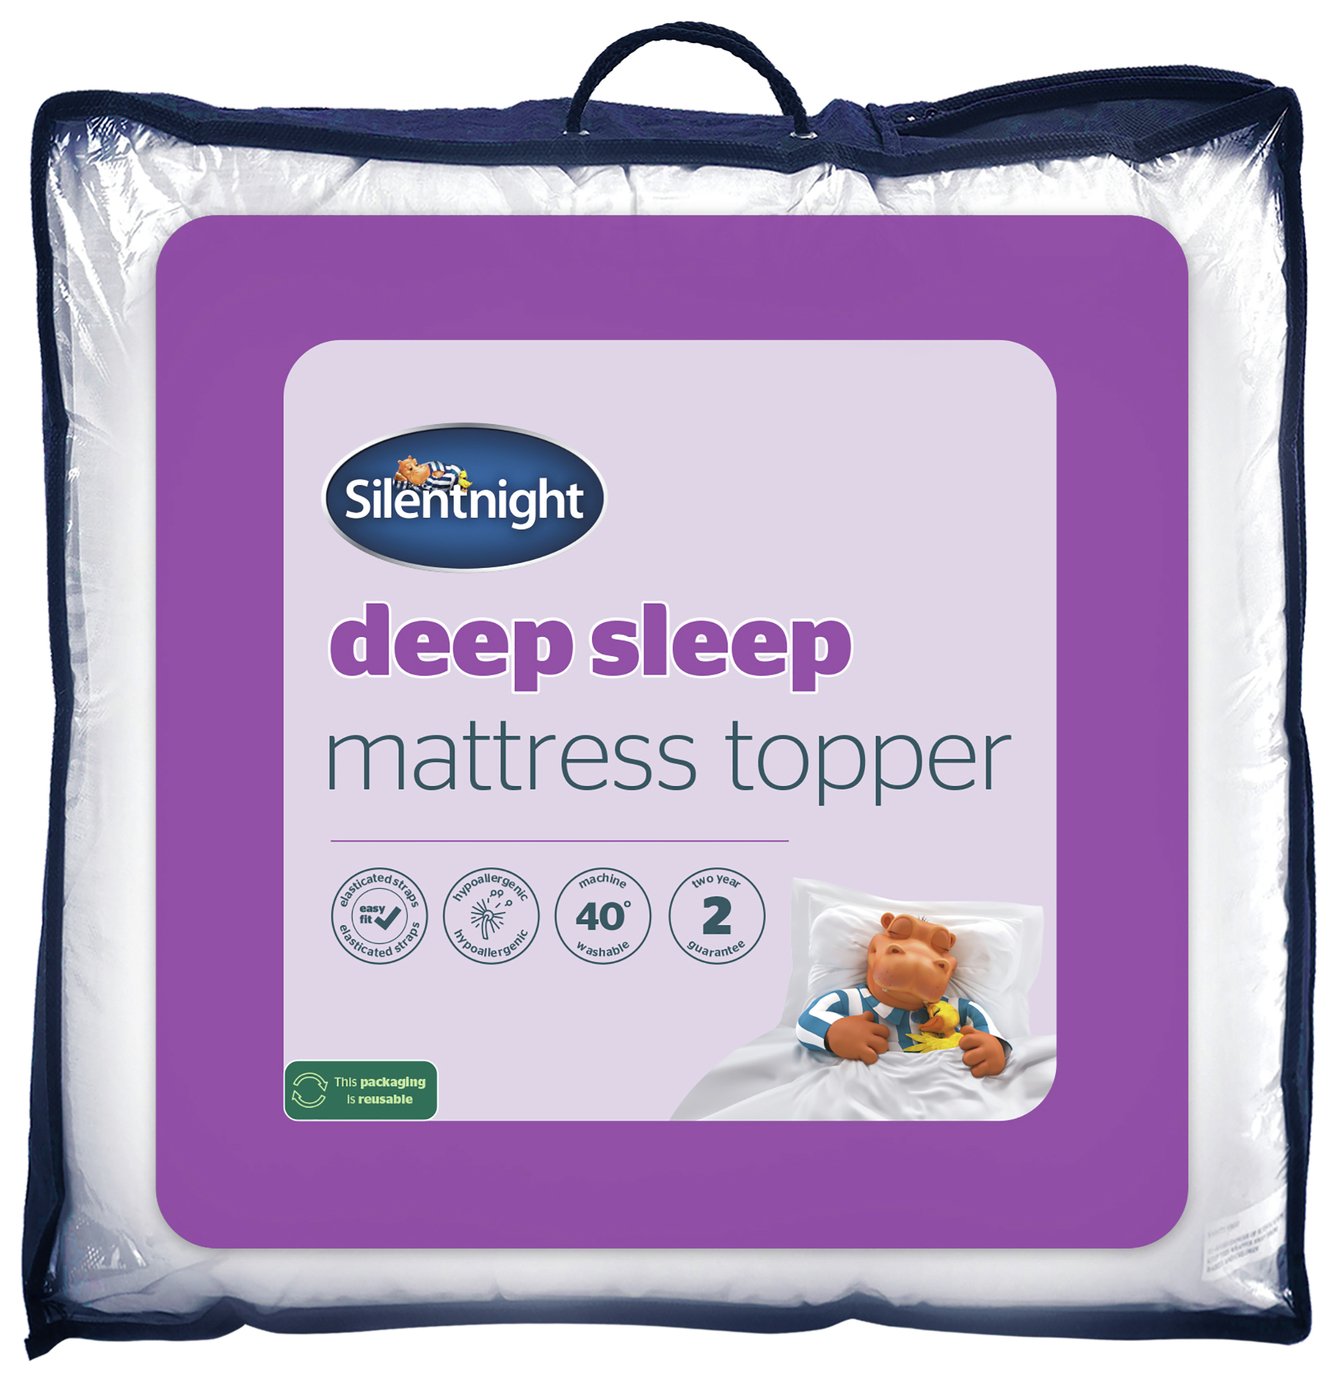 Silentnight Deep Sleep Mattress Topper Reviews